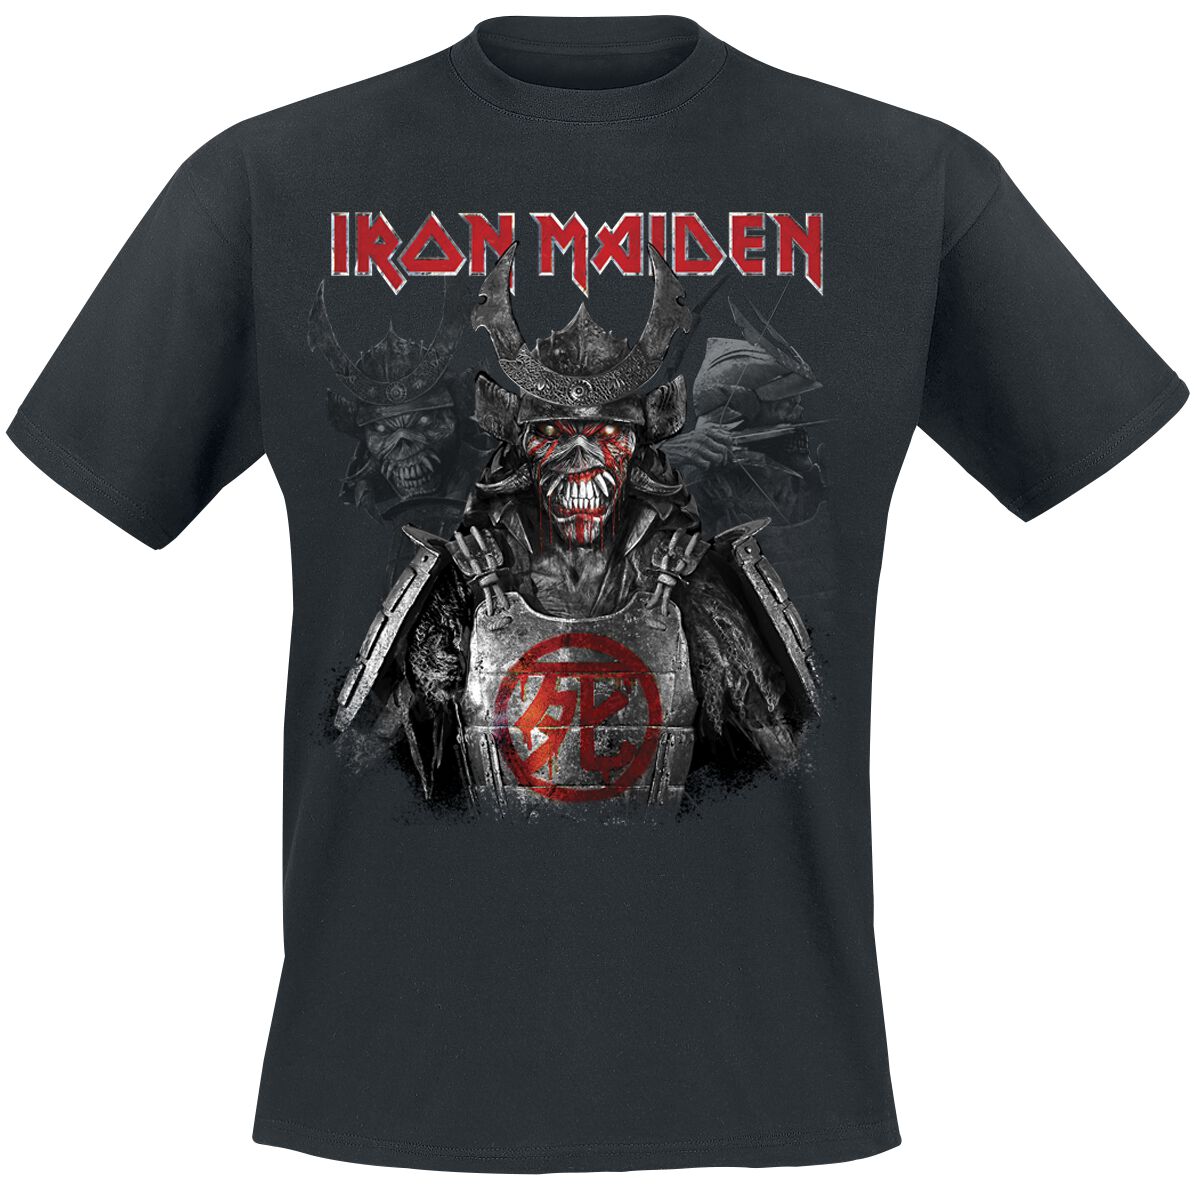 Iron Maiden T-Shirt - Senjutsu Heads - S bis 4XL - für Männer - Größe S - schwarz  - Lizenziertes Merchandise!